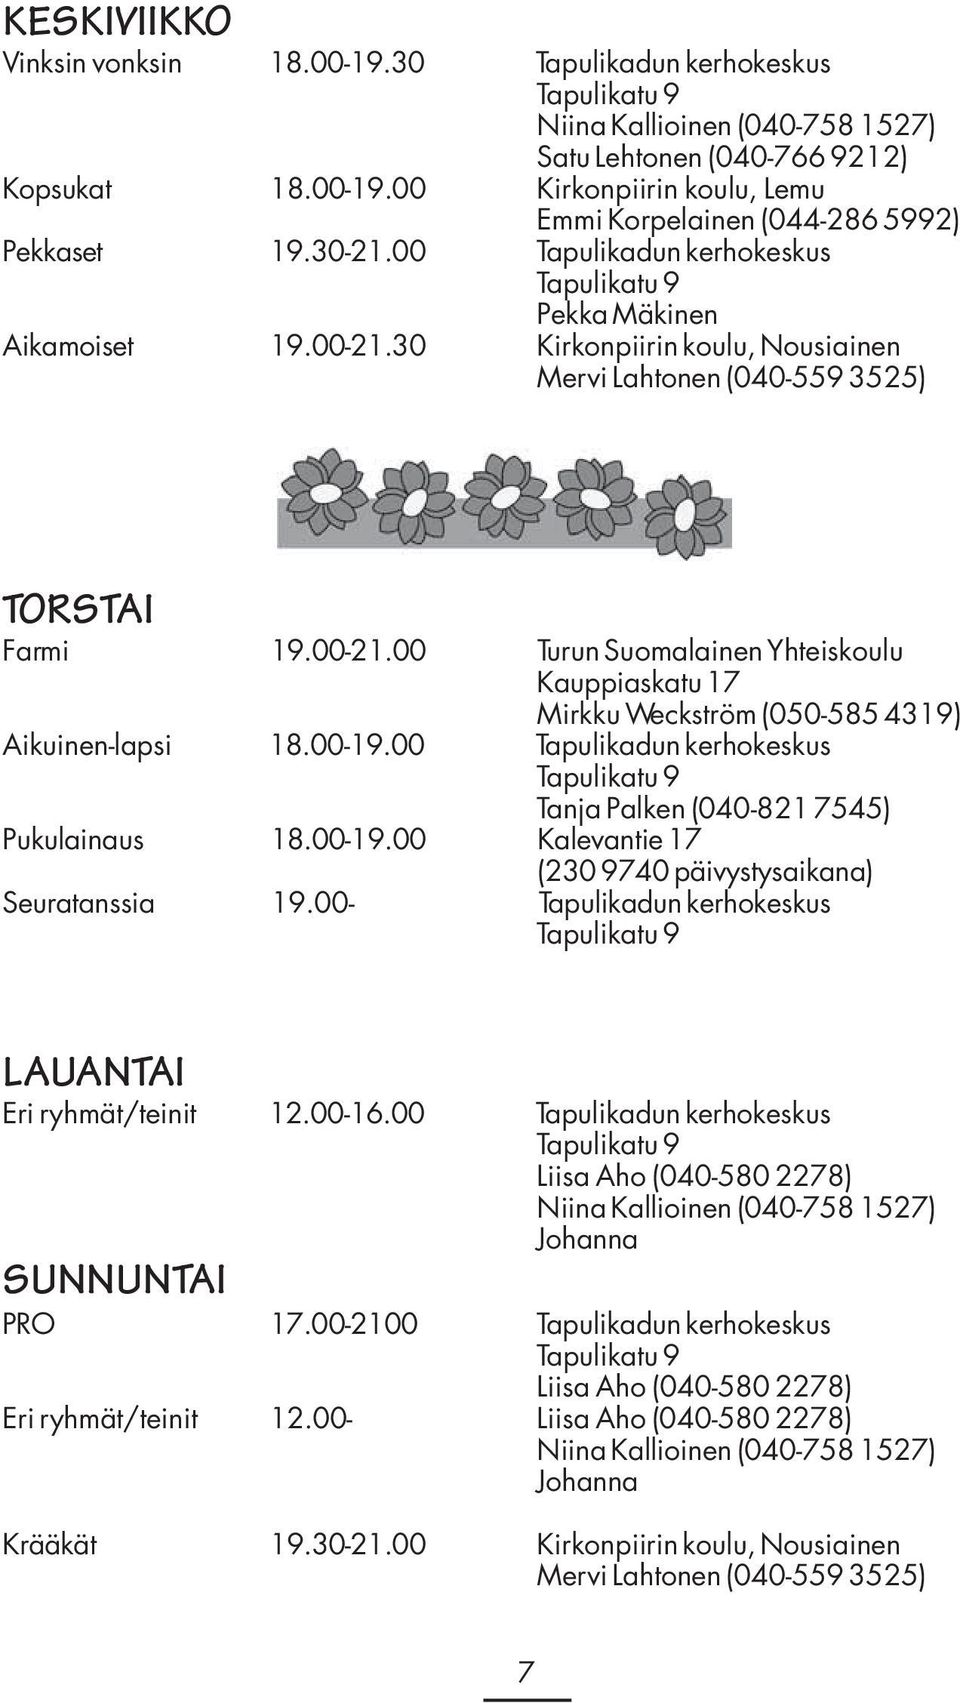 00-19.00 Tapulikadun kerhokeskus Tapulikatu 9 Tanja Palken (040-821 7545) Pukulainaus 18.00-19.00 Kalevantie 17 (230 9740 päivystysaikana) Seuratanssia 19.